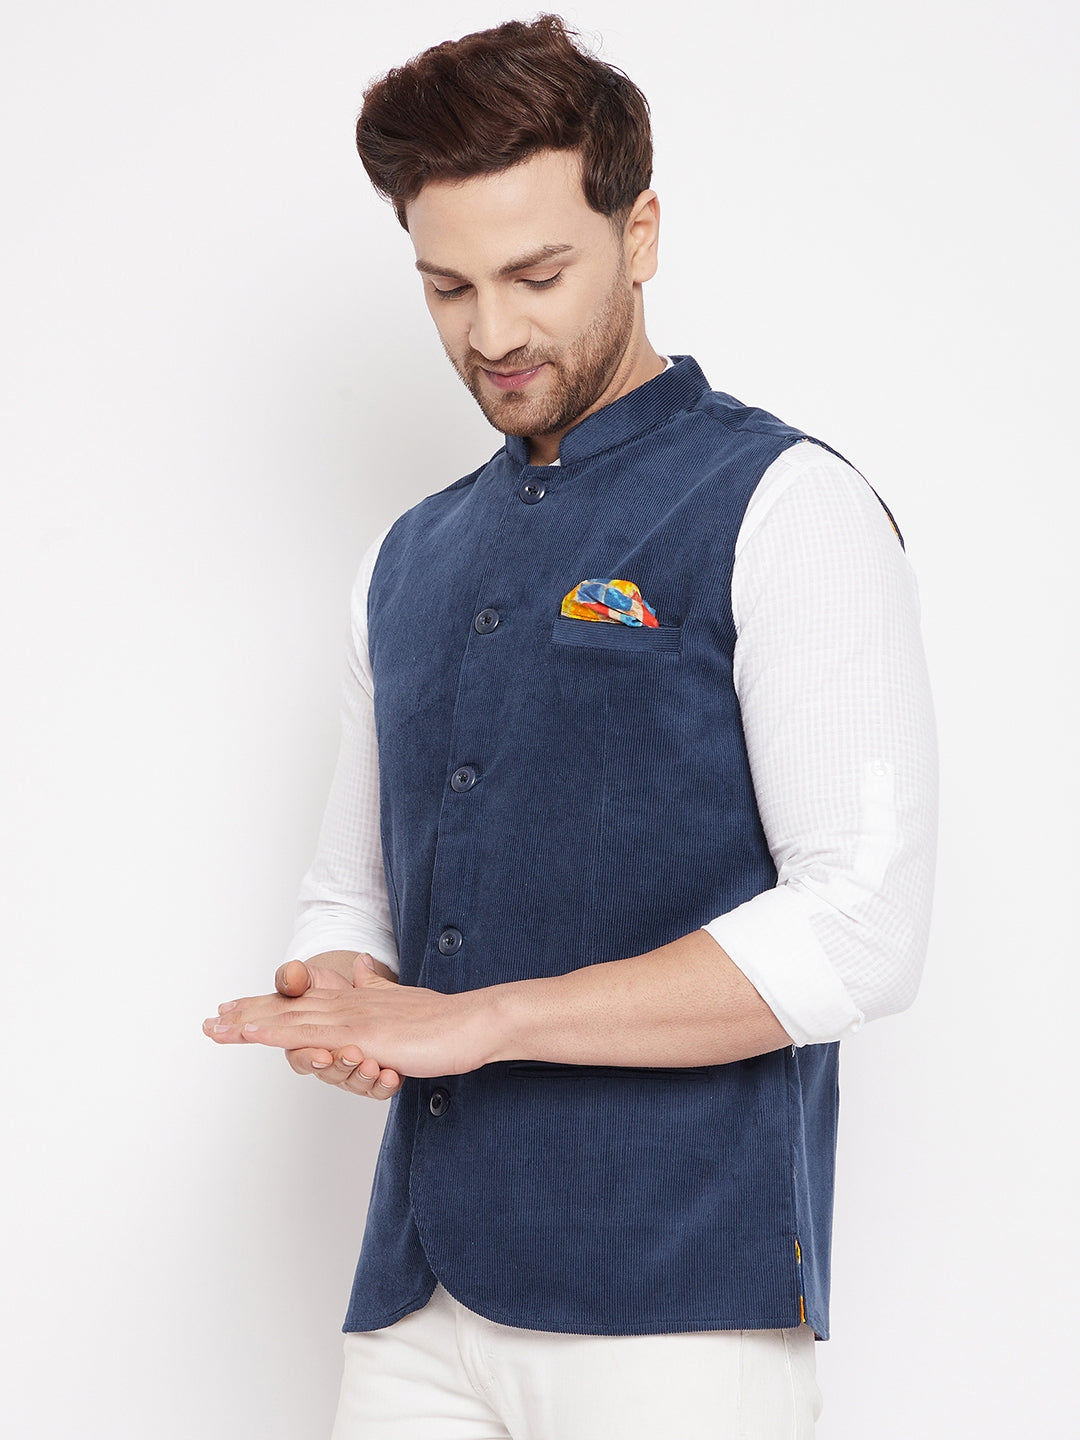 Men's Blue Color Nehru Jacket-Contrast Lining-Inbuilt Pocket Square - Even Apparels